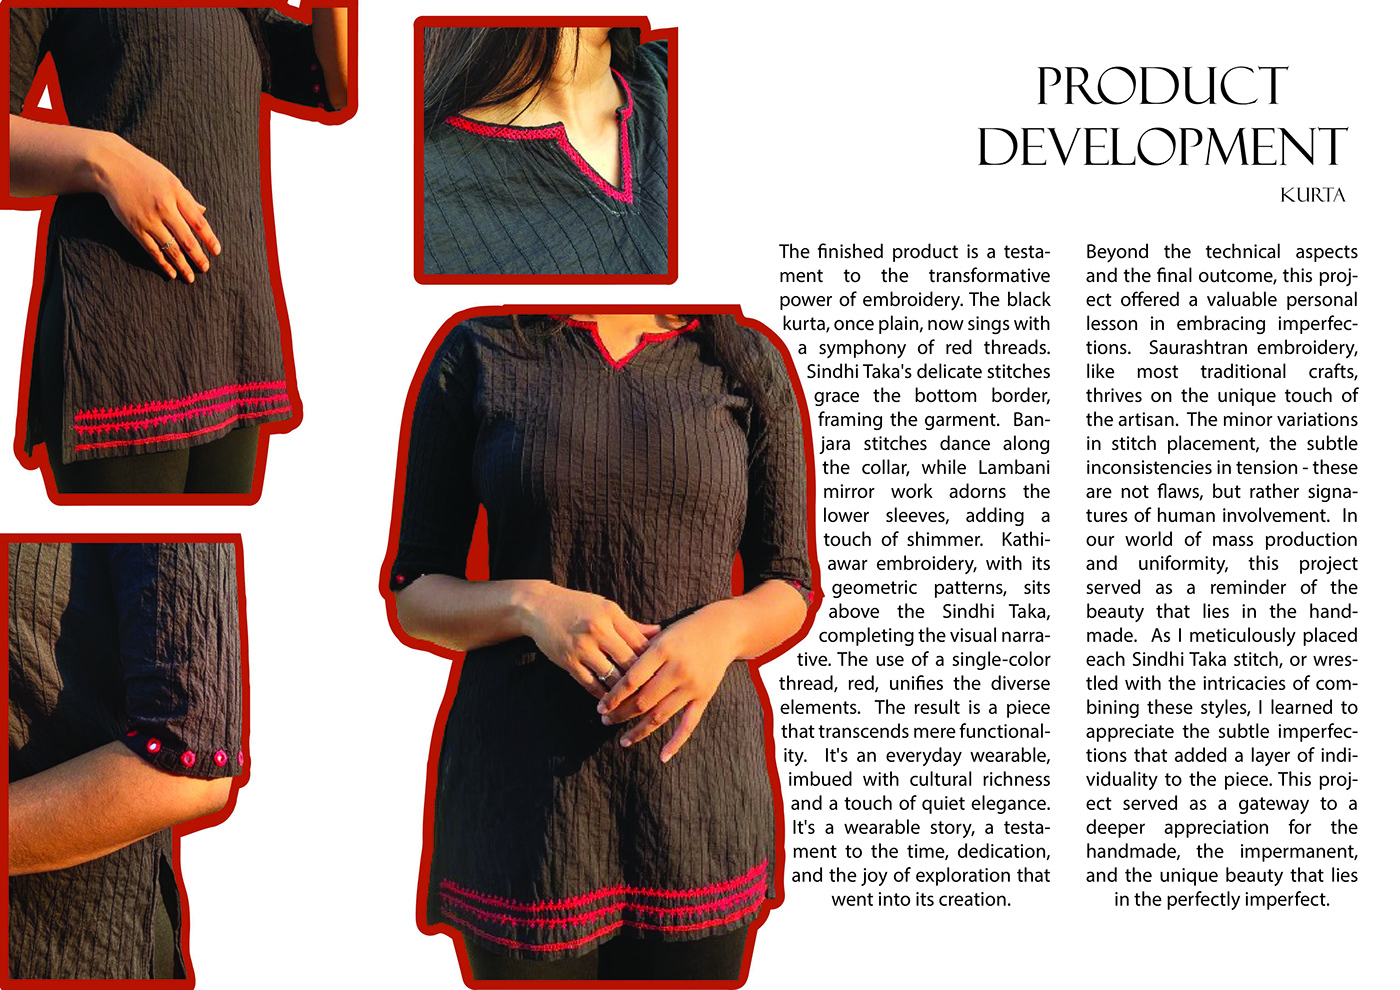 Embroidery traditional Indianfashion kurta magazine layout Magazine design Product Photography productdesign productdevelopment fashion design